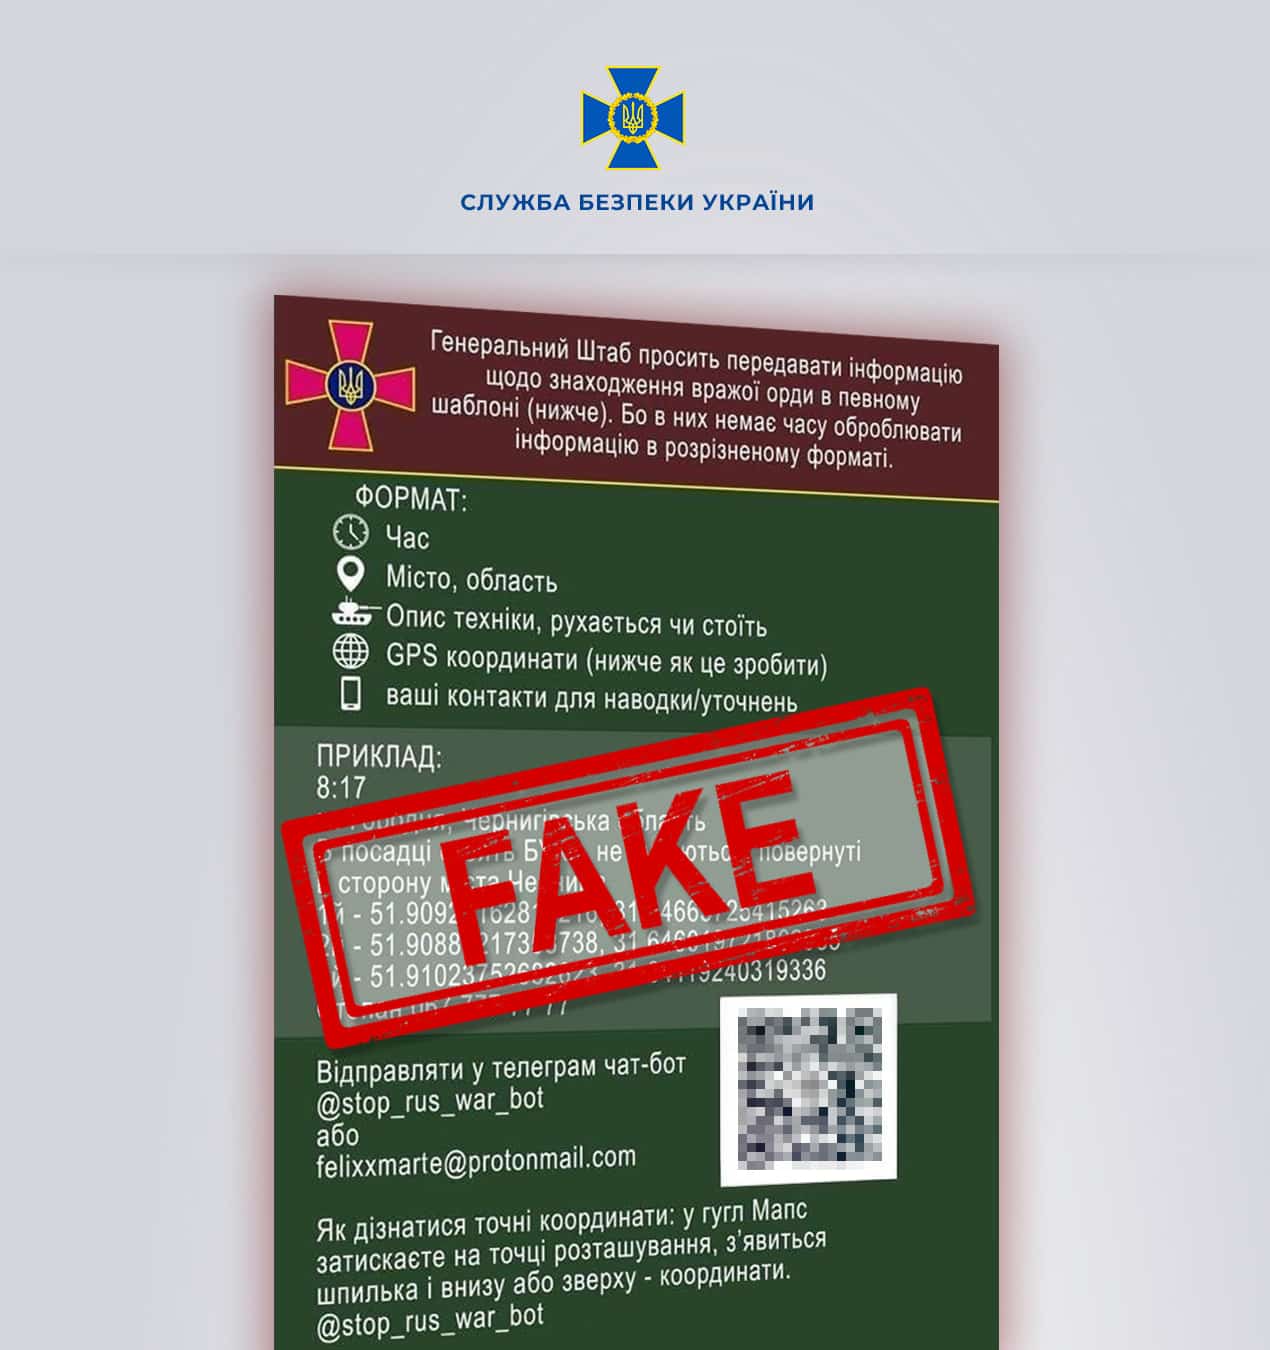 Служба безпеки України застерігає: створено фейковий чат-бот СБУ